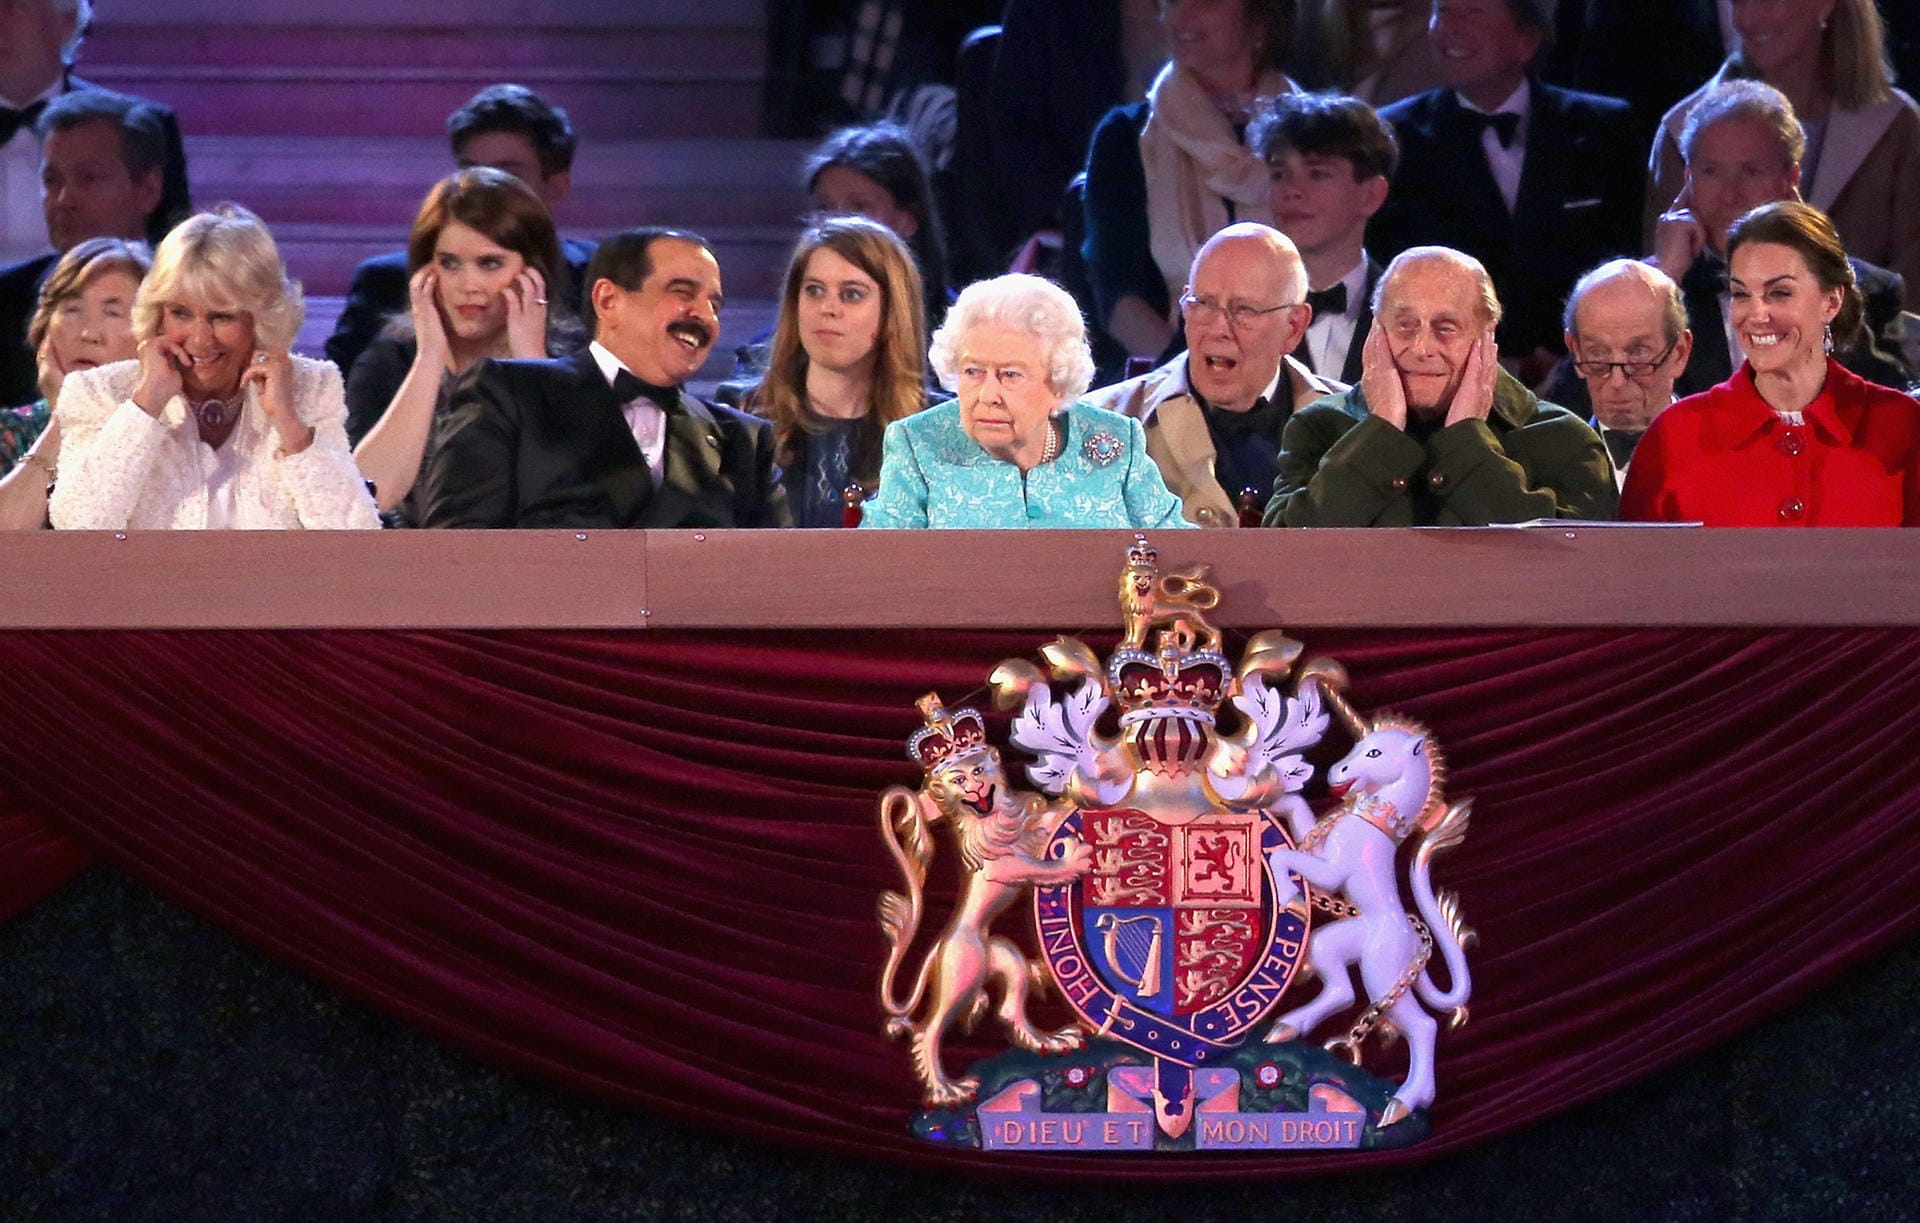 Am 15. Mai gingen die mehrtägigen Feierlichkeiten zum 90. Geburtstag der Queen in Windsor zu Ende. Die letzte Pferdeshow, ein Spektakel, das auch vom Fernsehen übertragen wurde, sah sich die gesamte königliche Familie an. Wobei es Prinz Philip und Camilla wohl ab und zu etwas zu laut wurde.